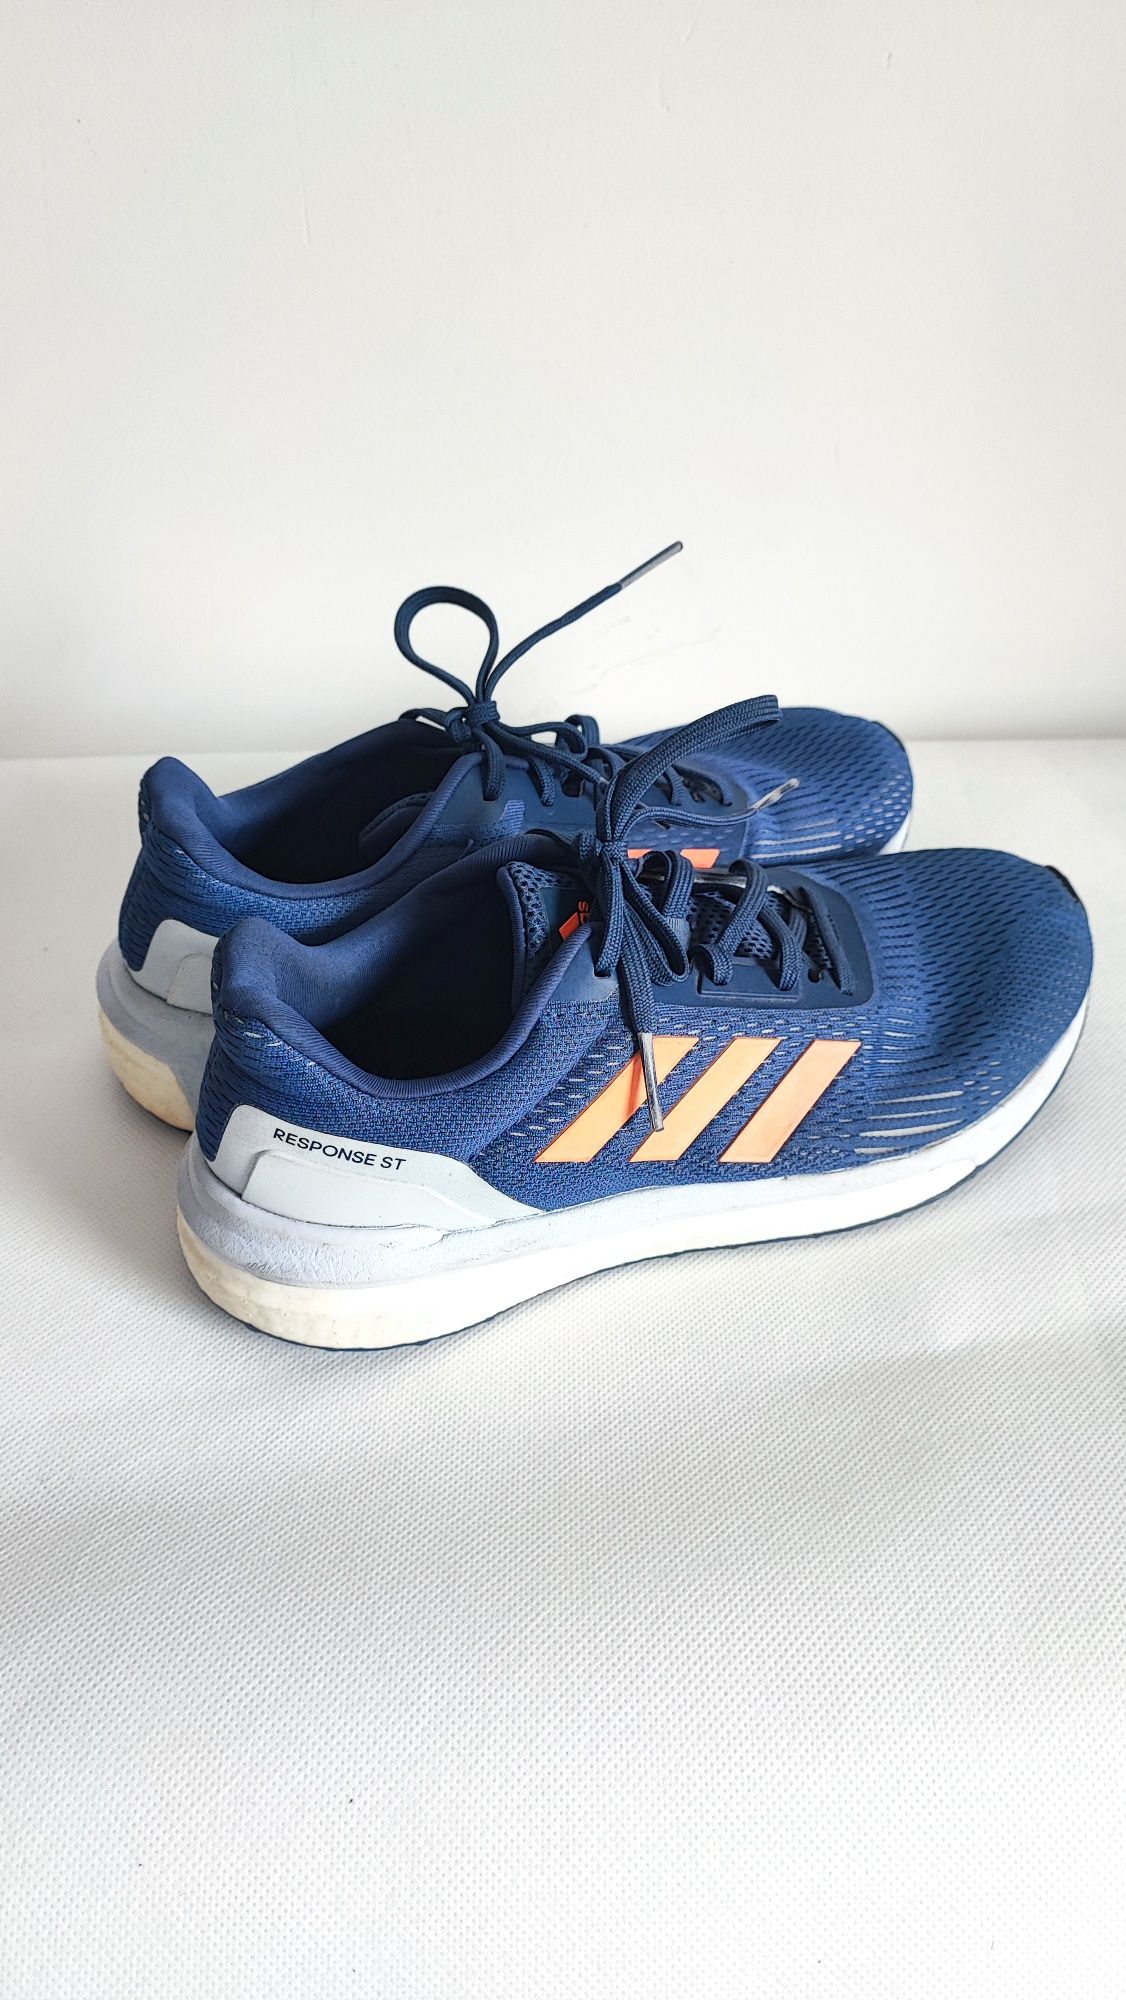 Buty sportowe do biegania Adidas Response rozmiar 40,5 wkładka 25,5 cm